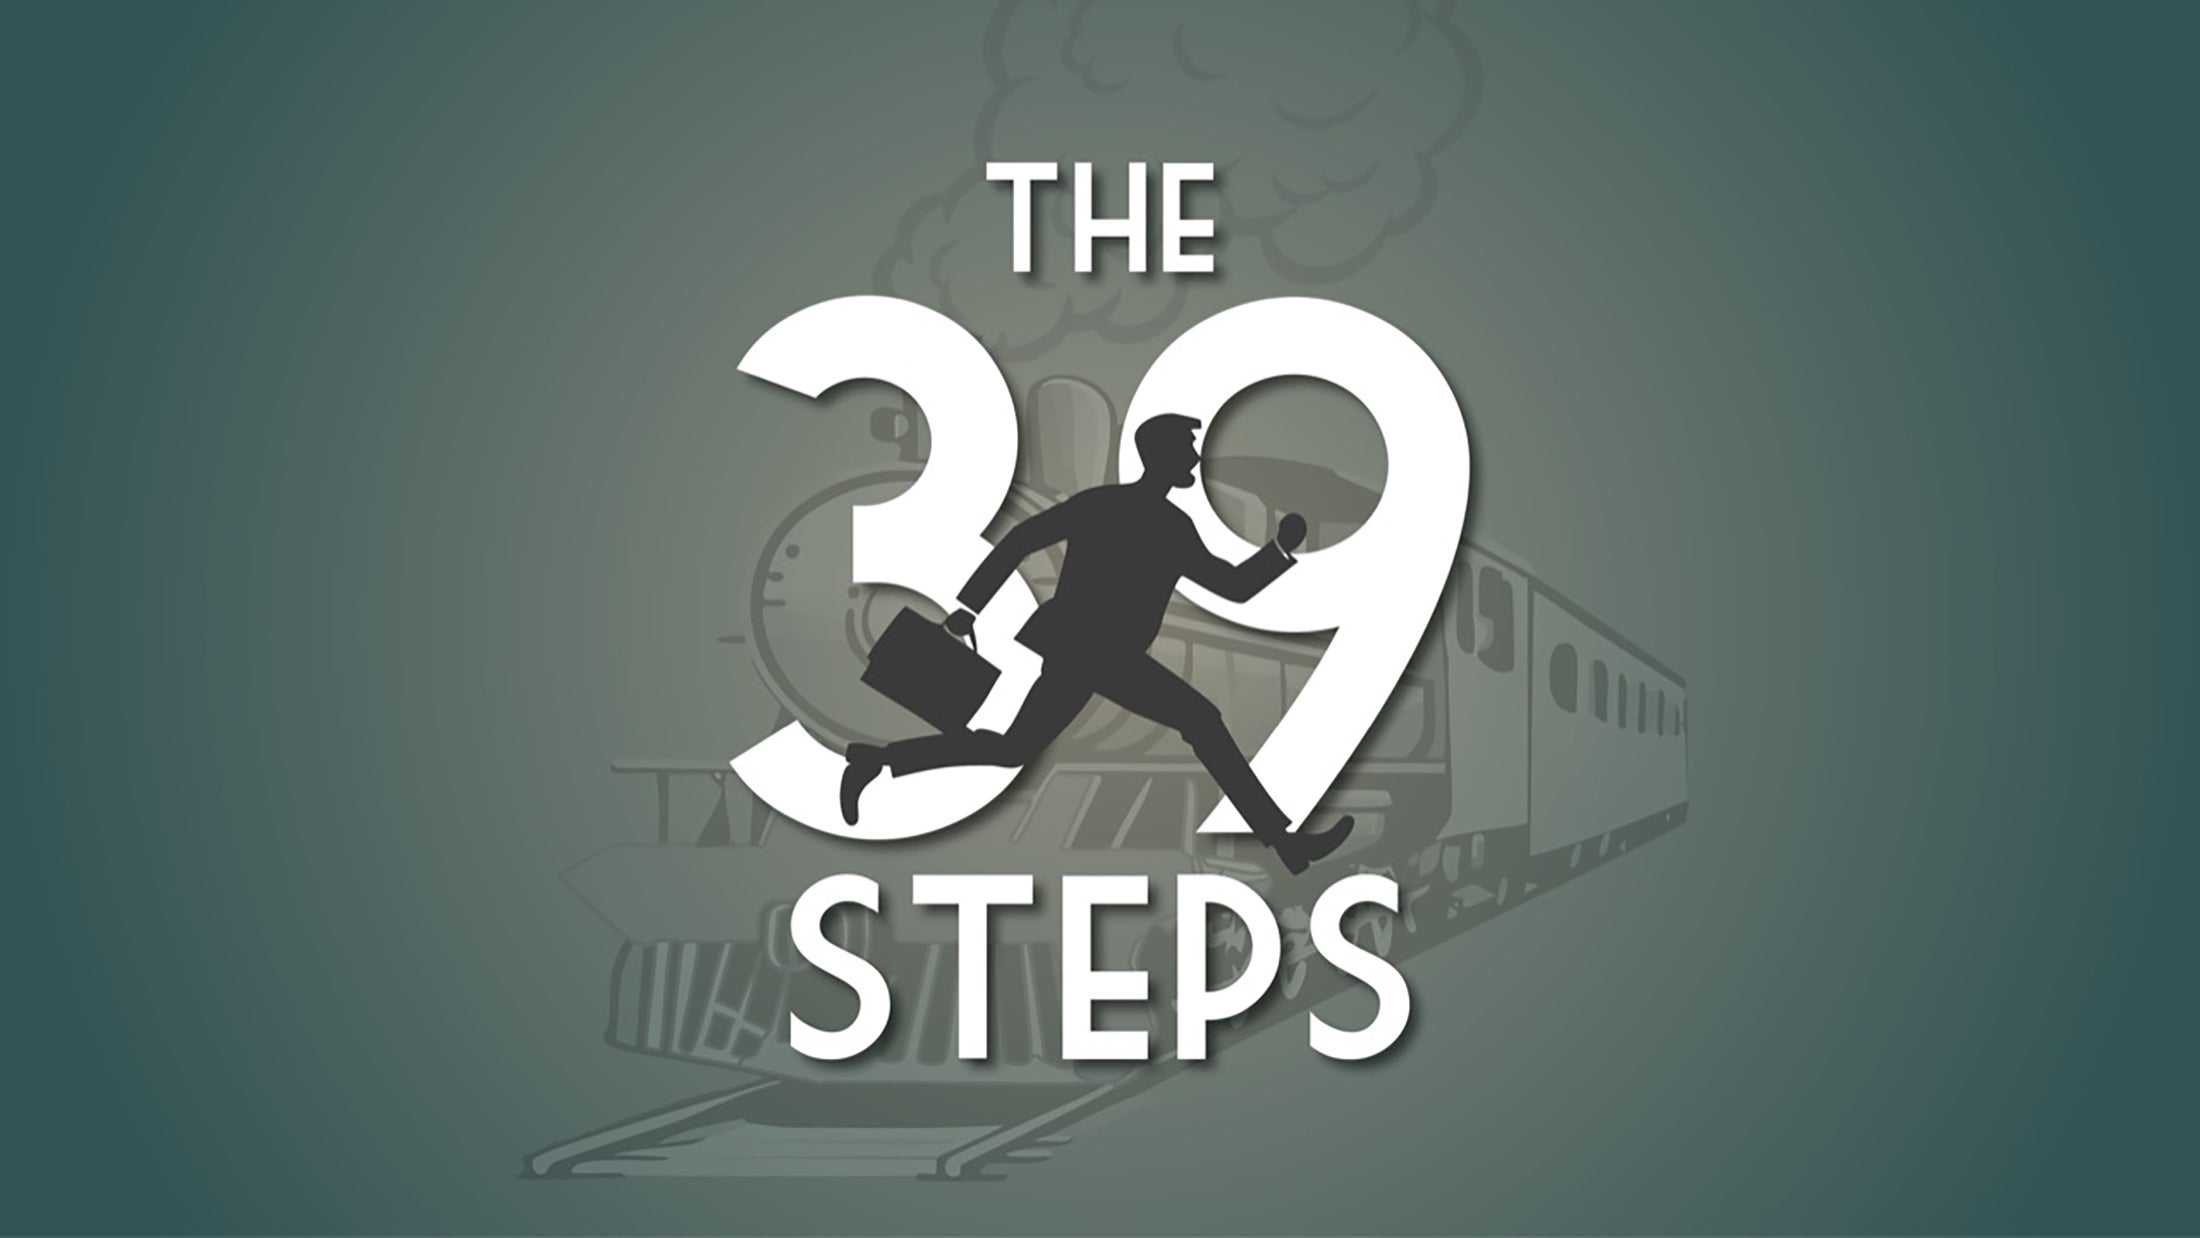 The 39 Steps at San Francisco Playhouse